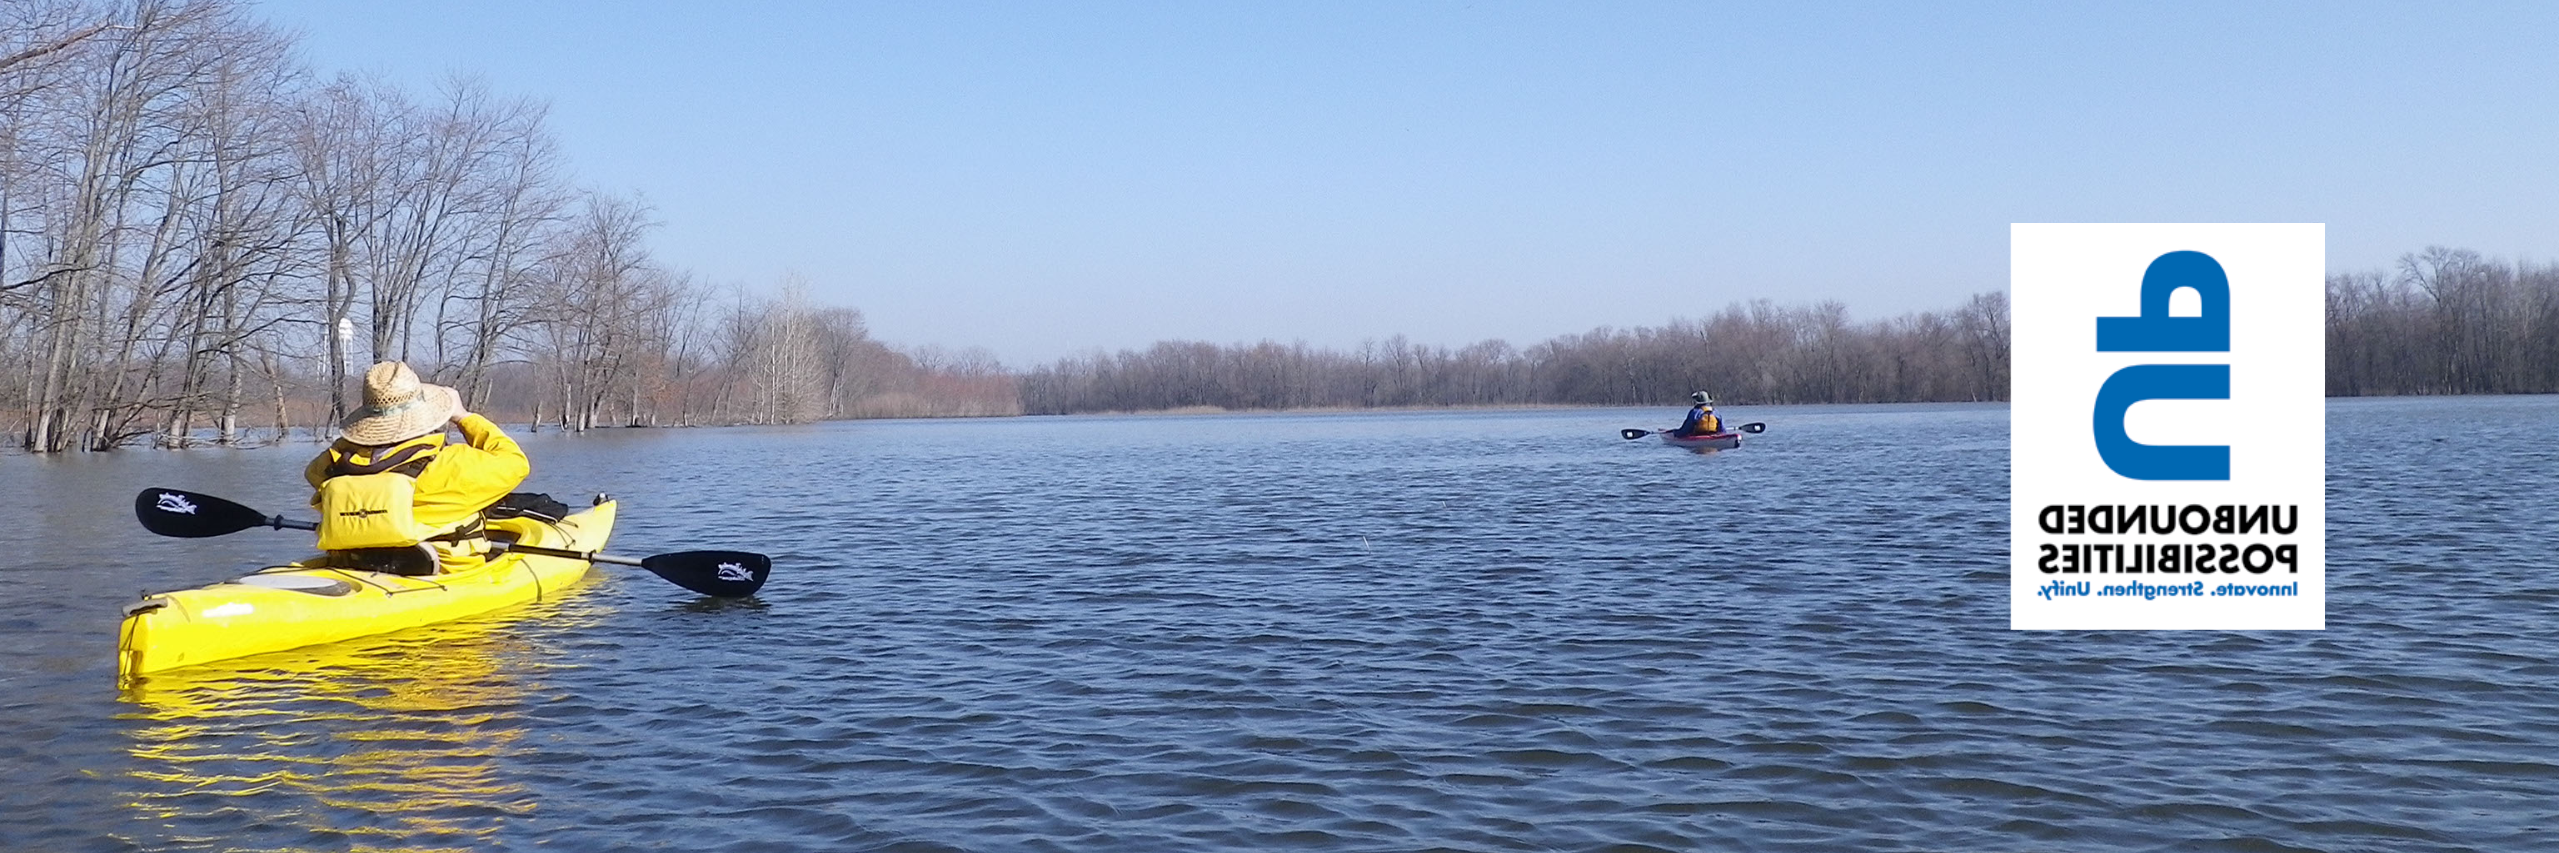 两个人在wabashhiki的皮划艇上的图像，图像的左侧有一个无限可能性的标志